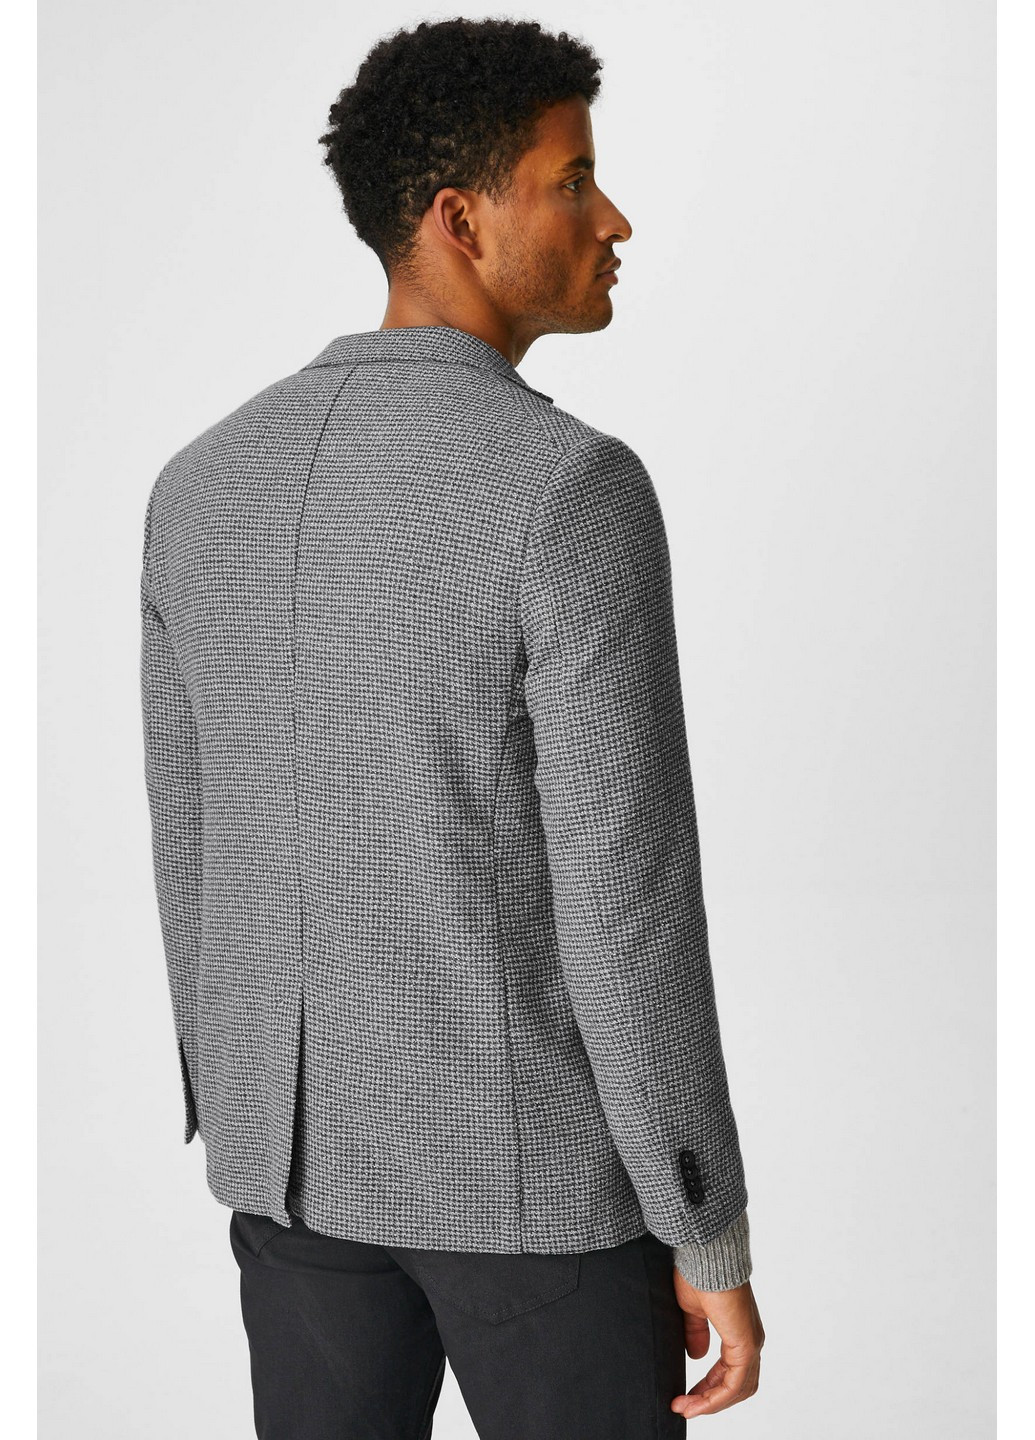 Пиджак C&A полоска светло-серый деловой полиэстер